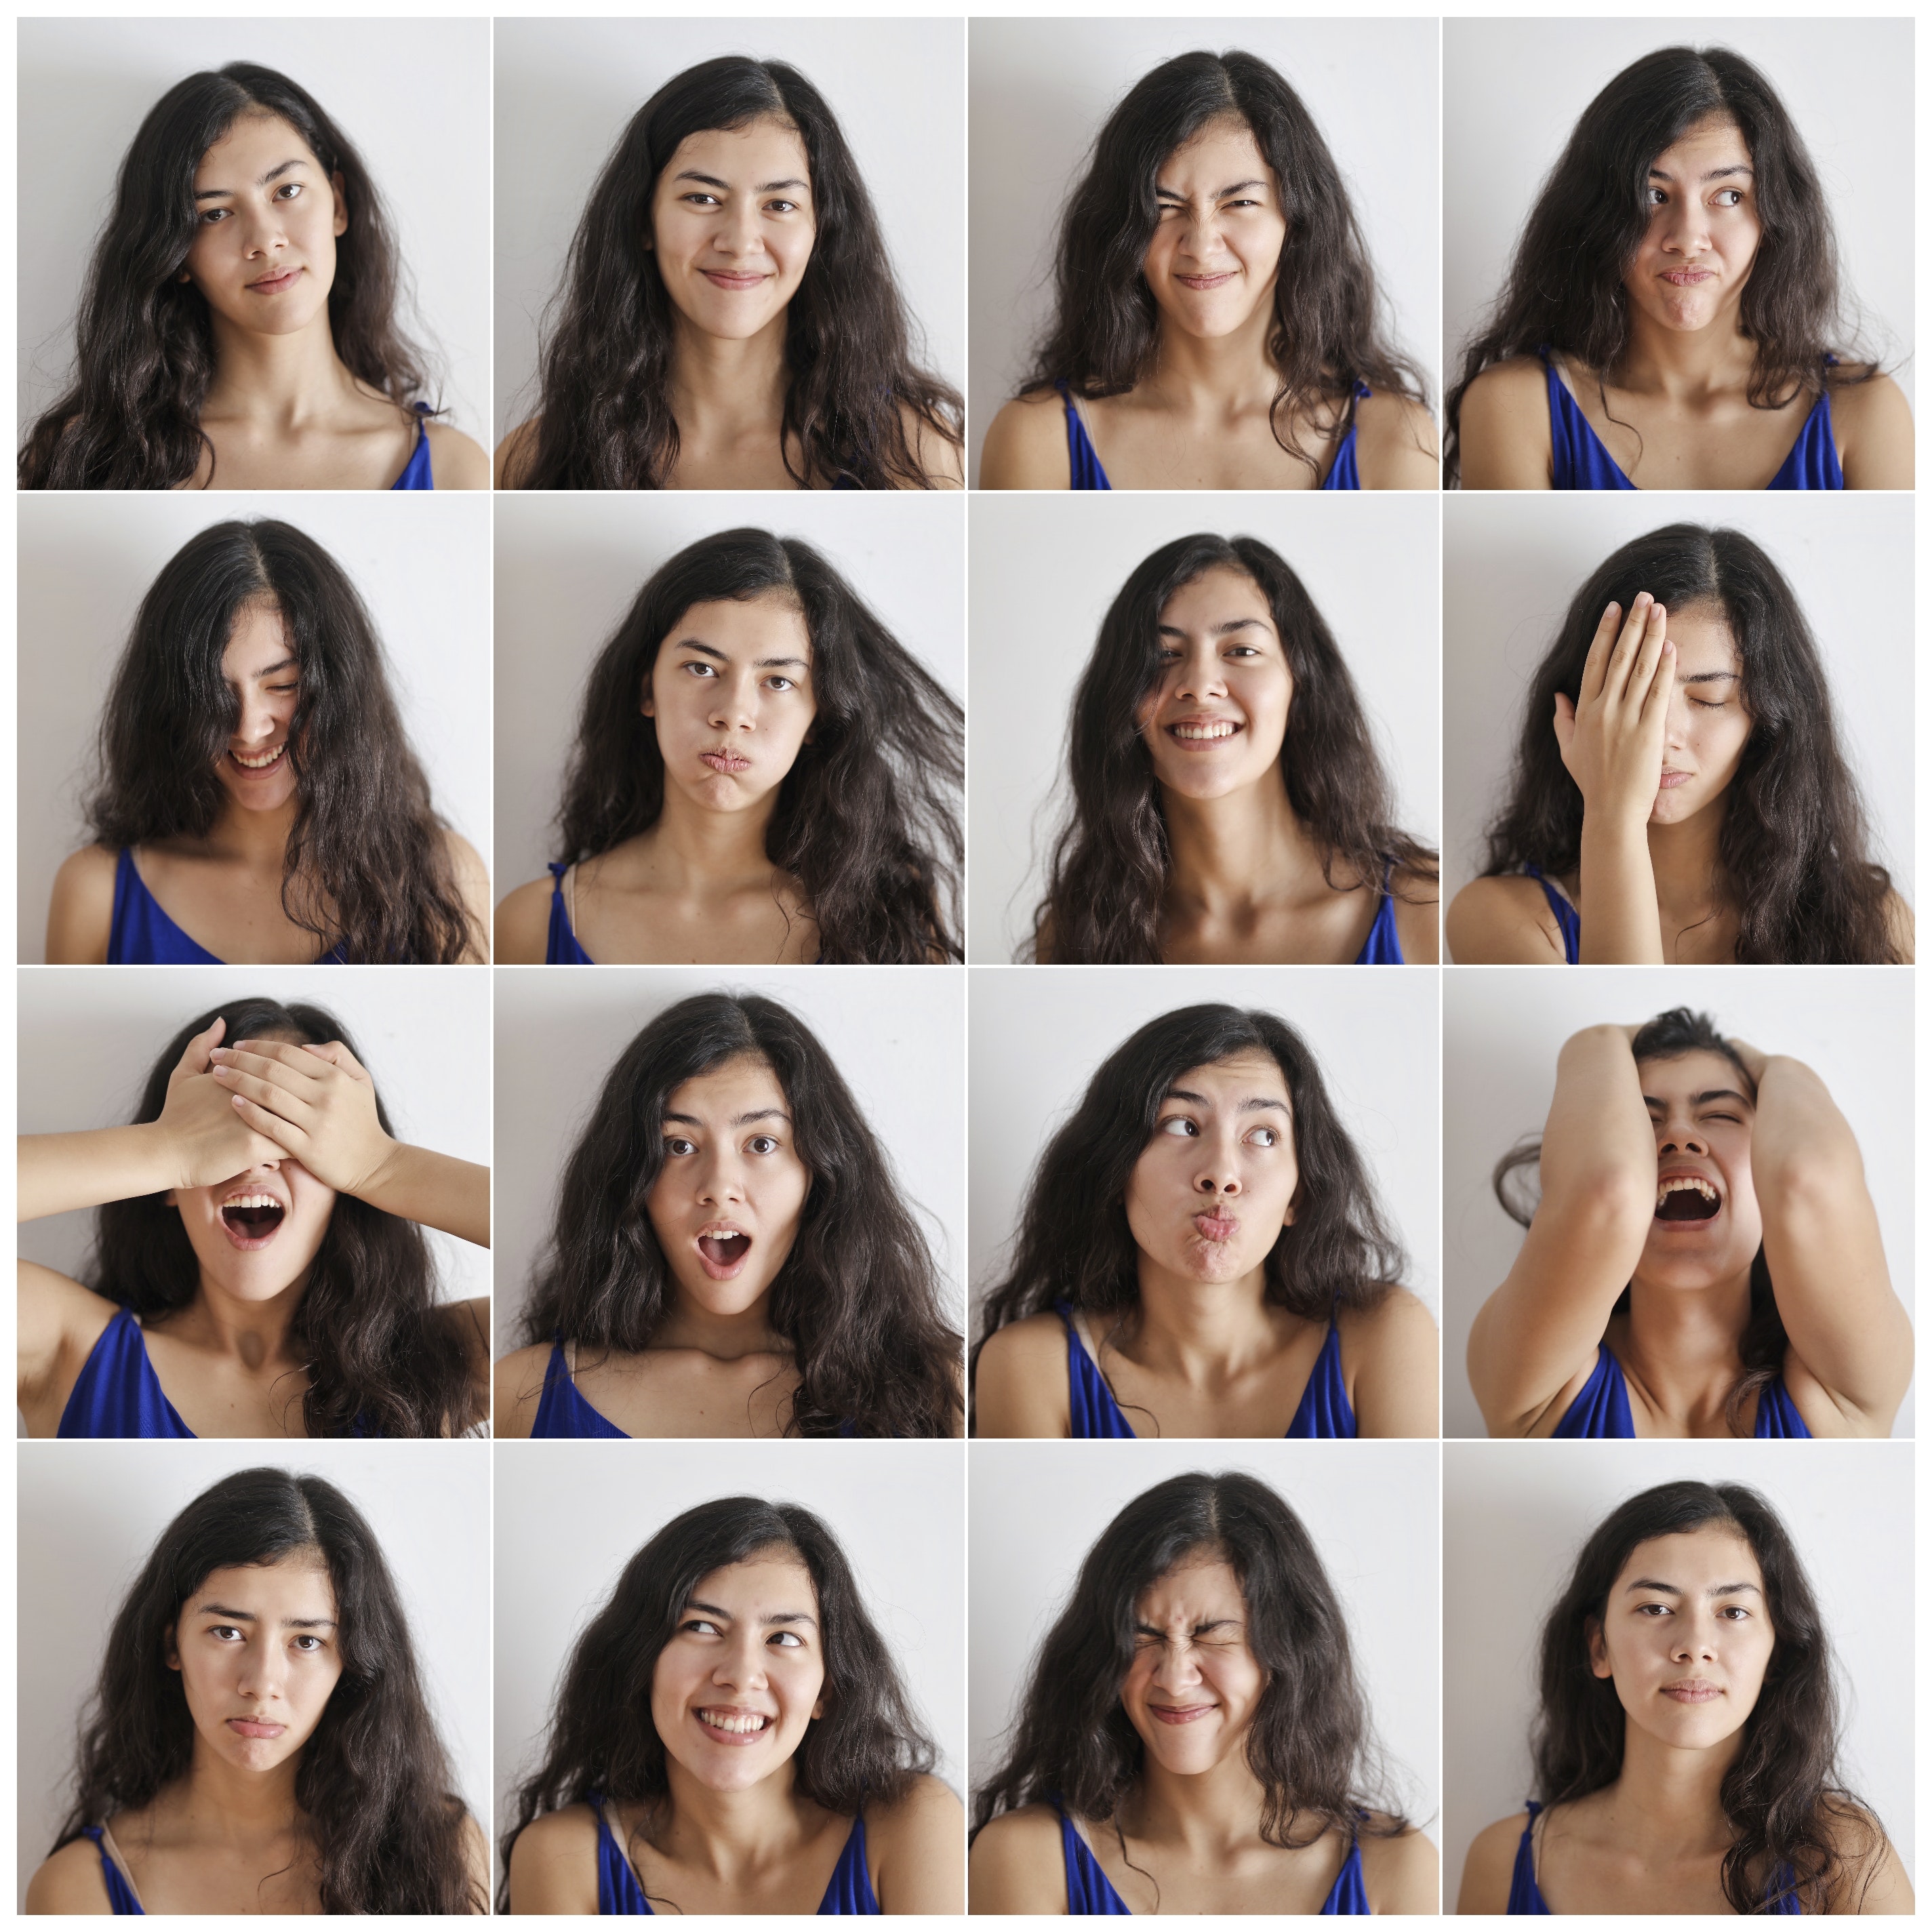 Un collage de 16 retratos de una joven expresando una variedad de emociones.